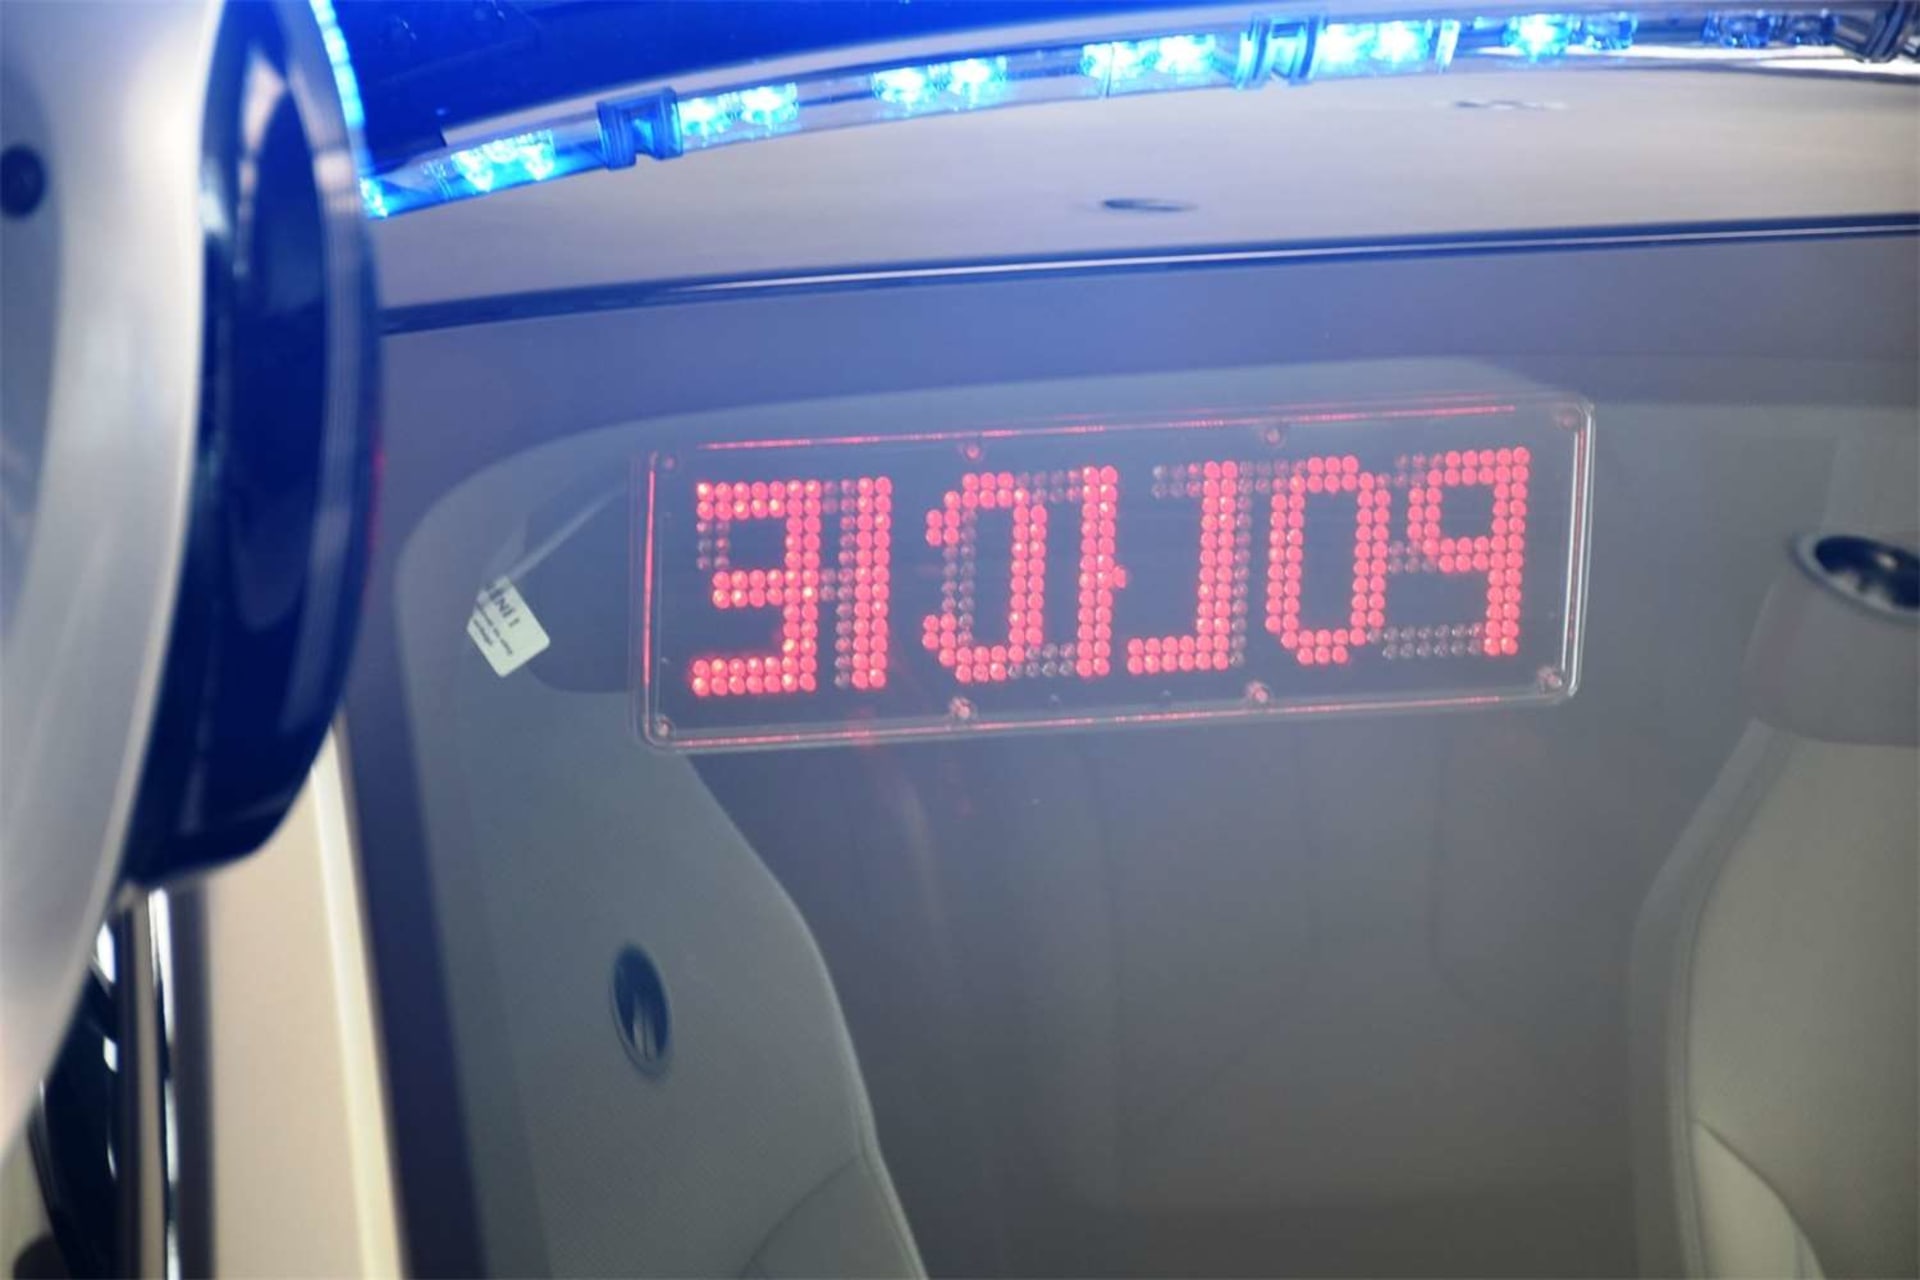 Informační systém u Hyundai bude mít v praxi podobný vizuál jako signalizace na policejních autech usměrňující pachatele přestupků.